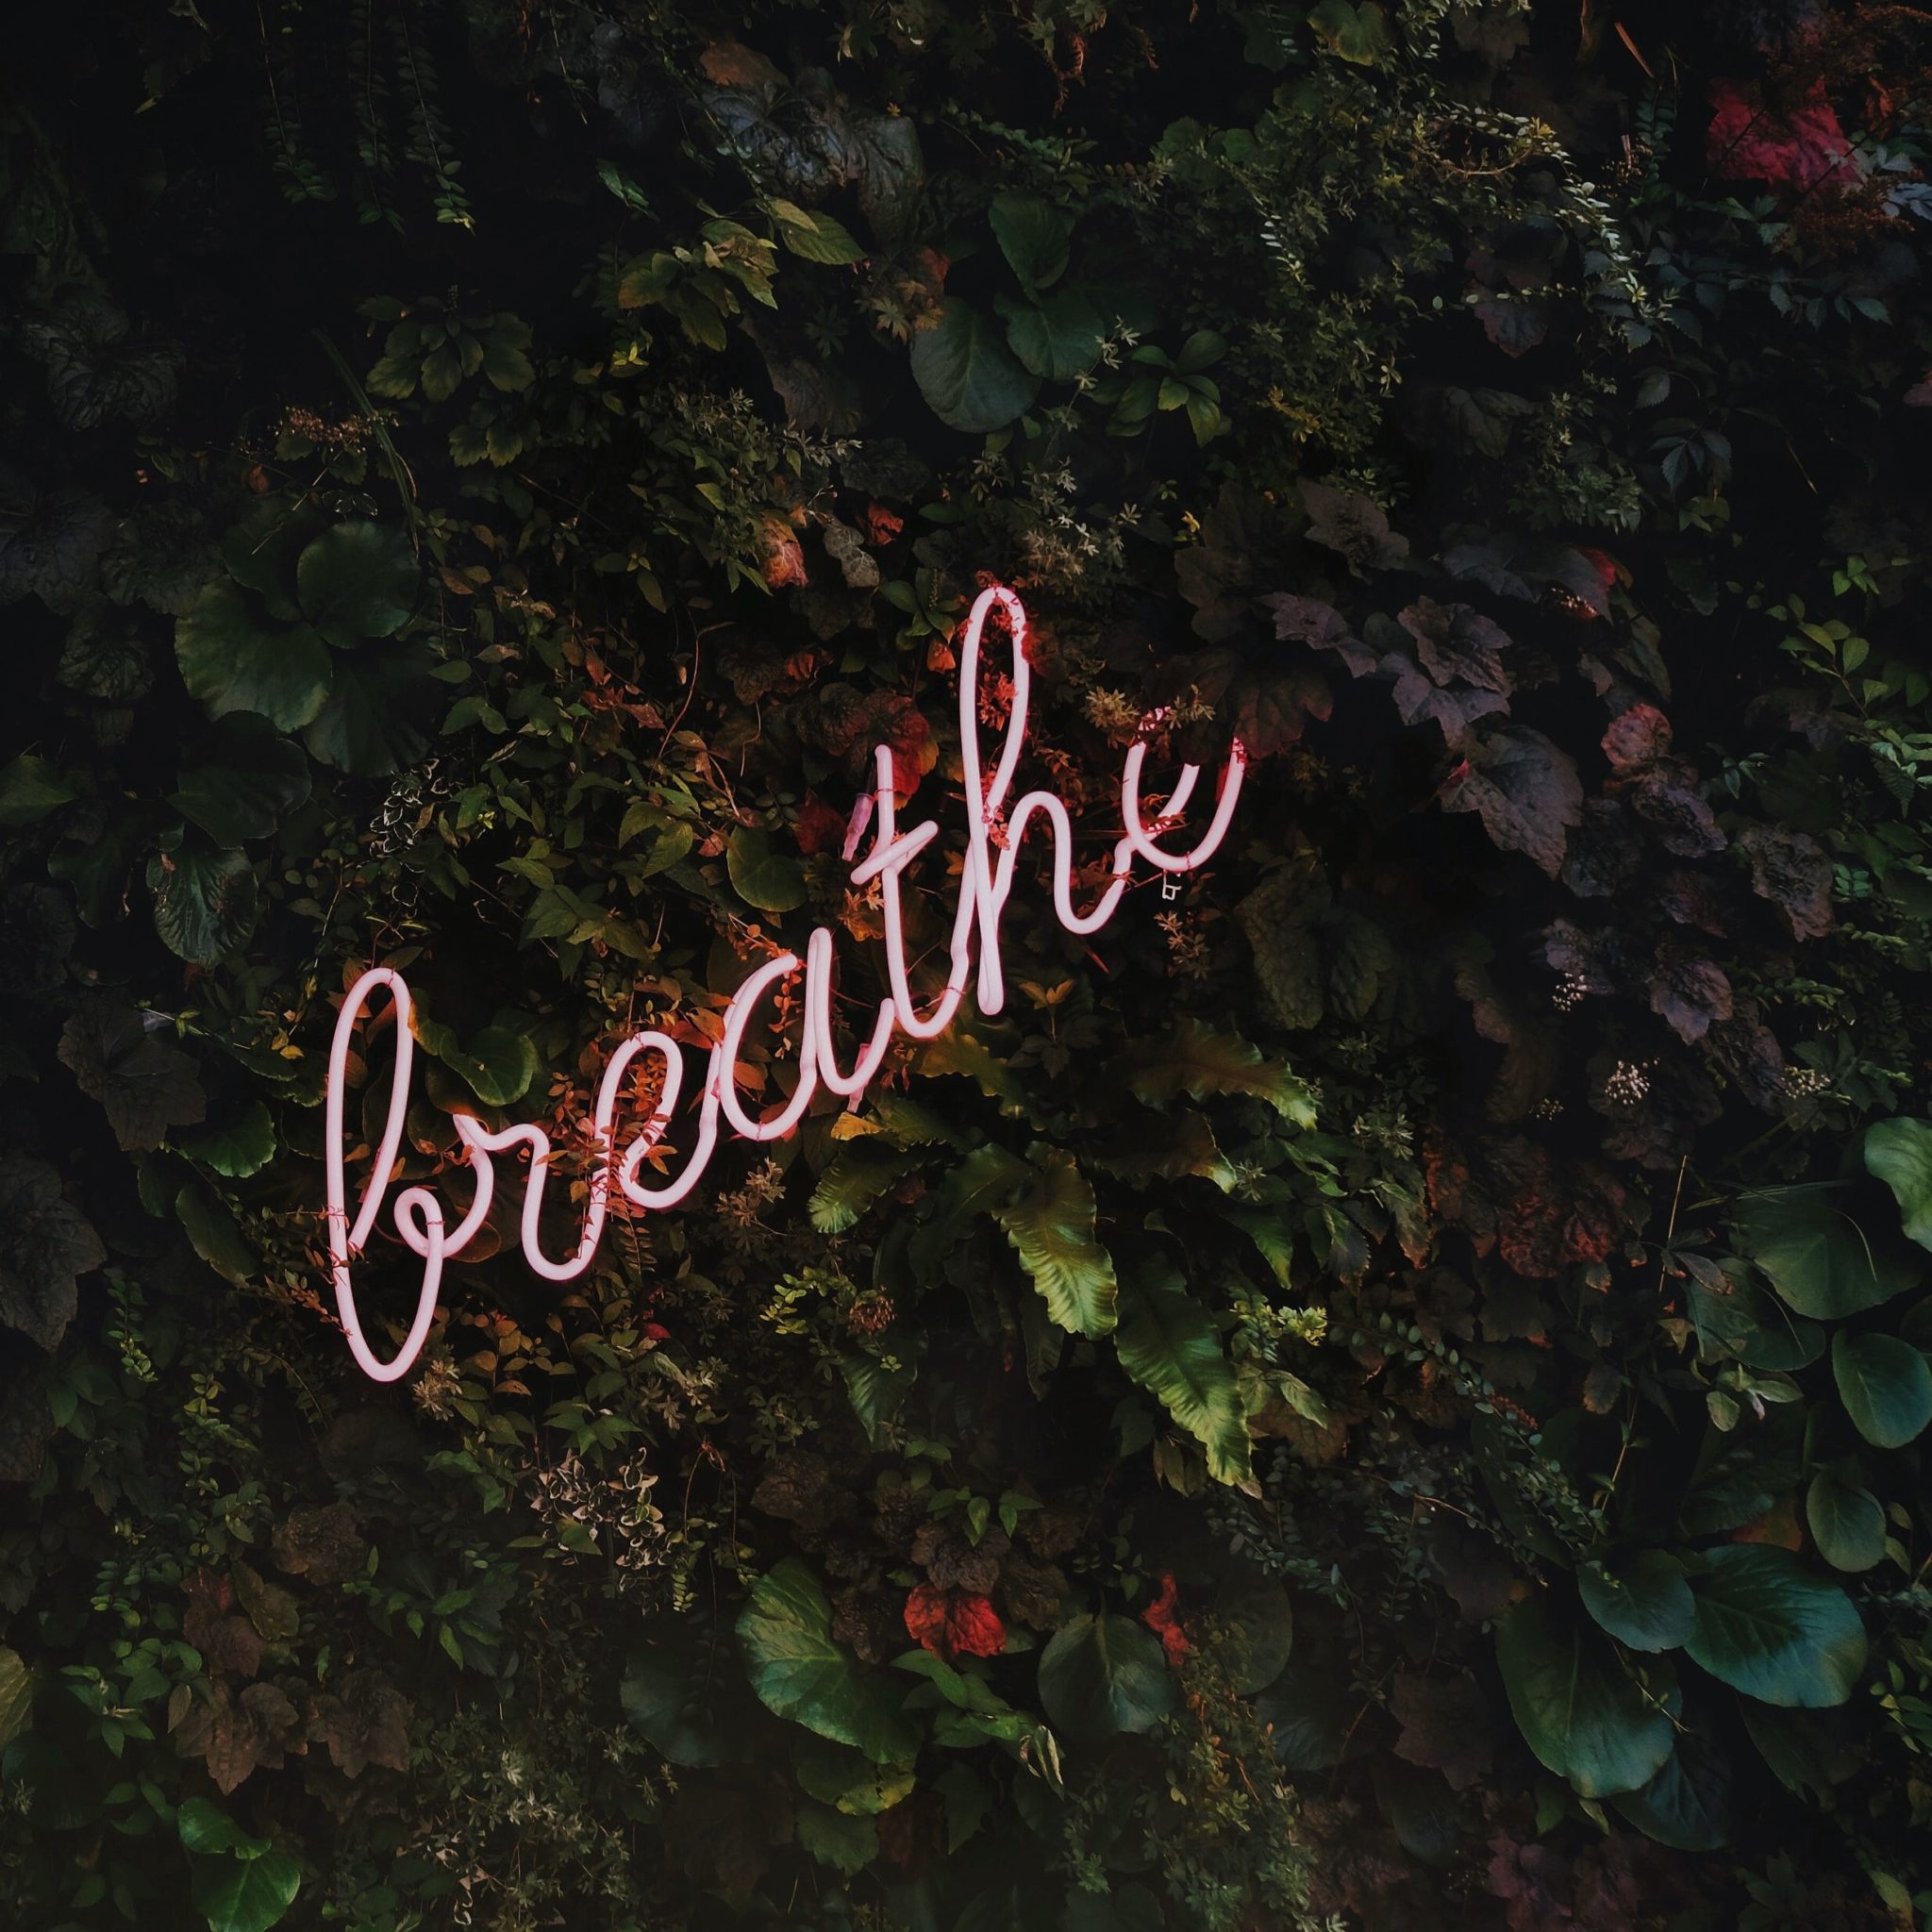 ściana zielonego listowia, a do niej przyczepiony neon z napisem breathe, czyli w zdrowiu i w chorobie zachowaj spokój